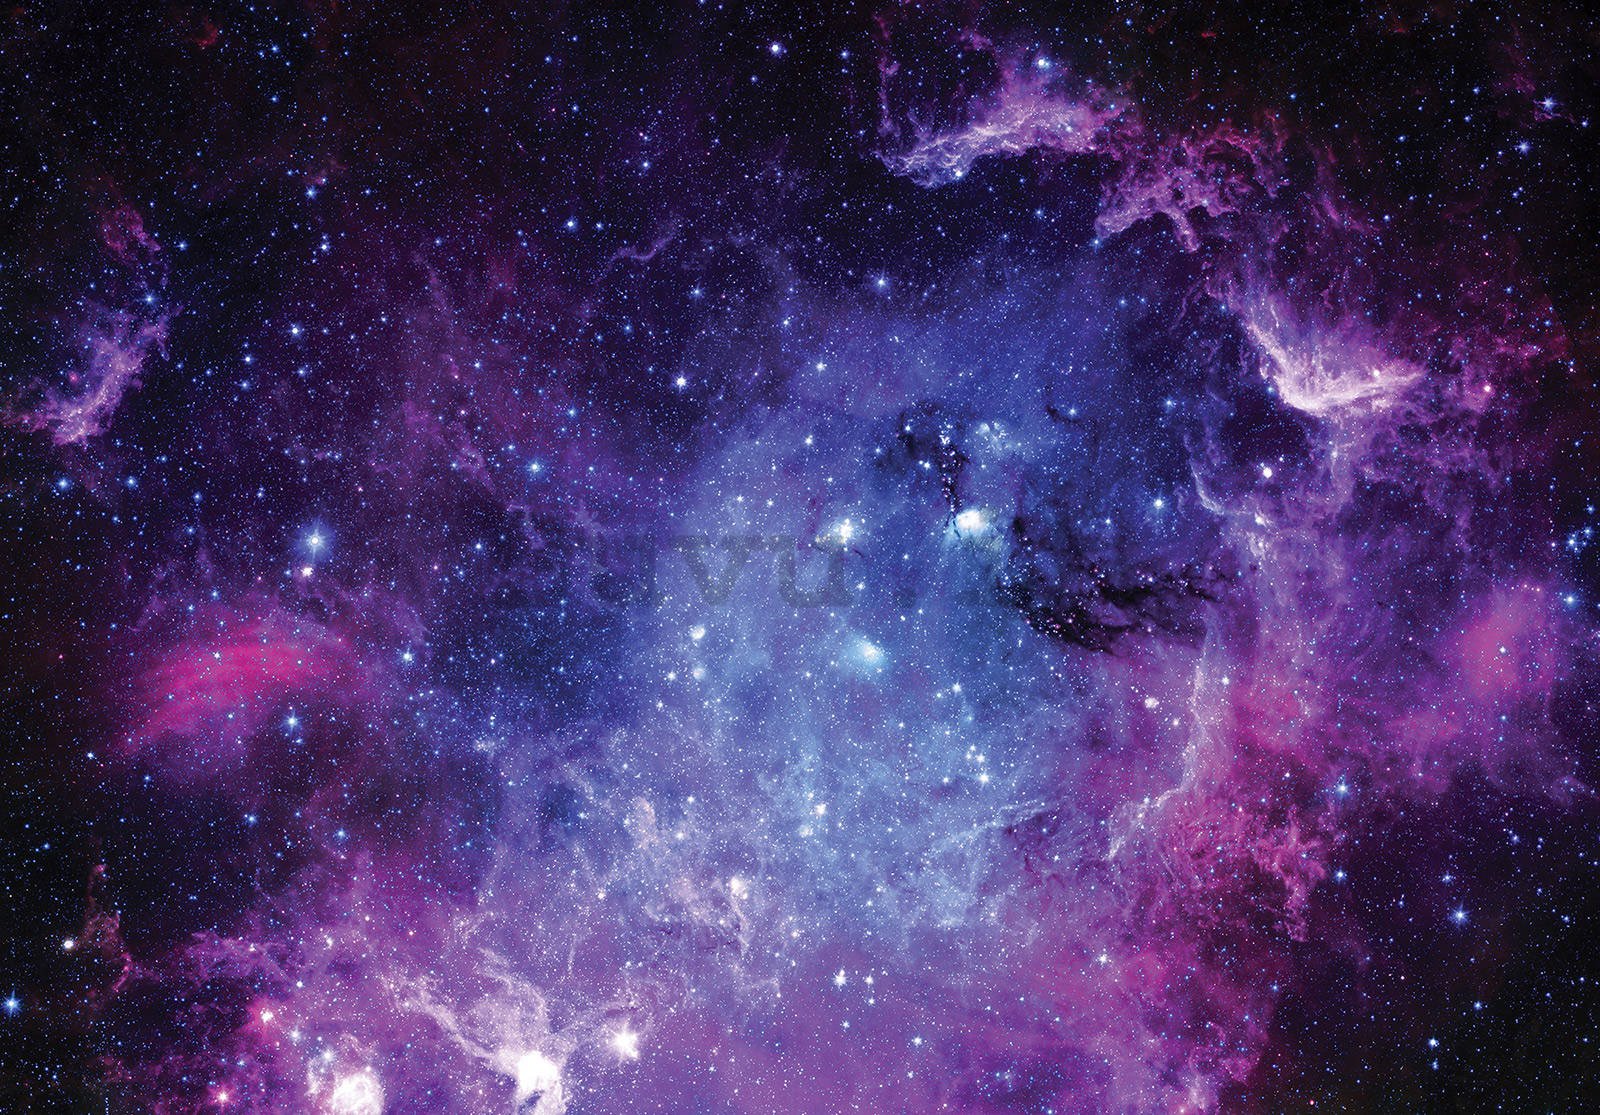 Fotomurale in TNT: Nebulosa viola (1) - 254x184 cm